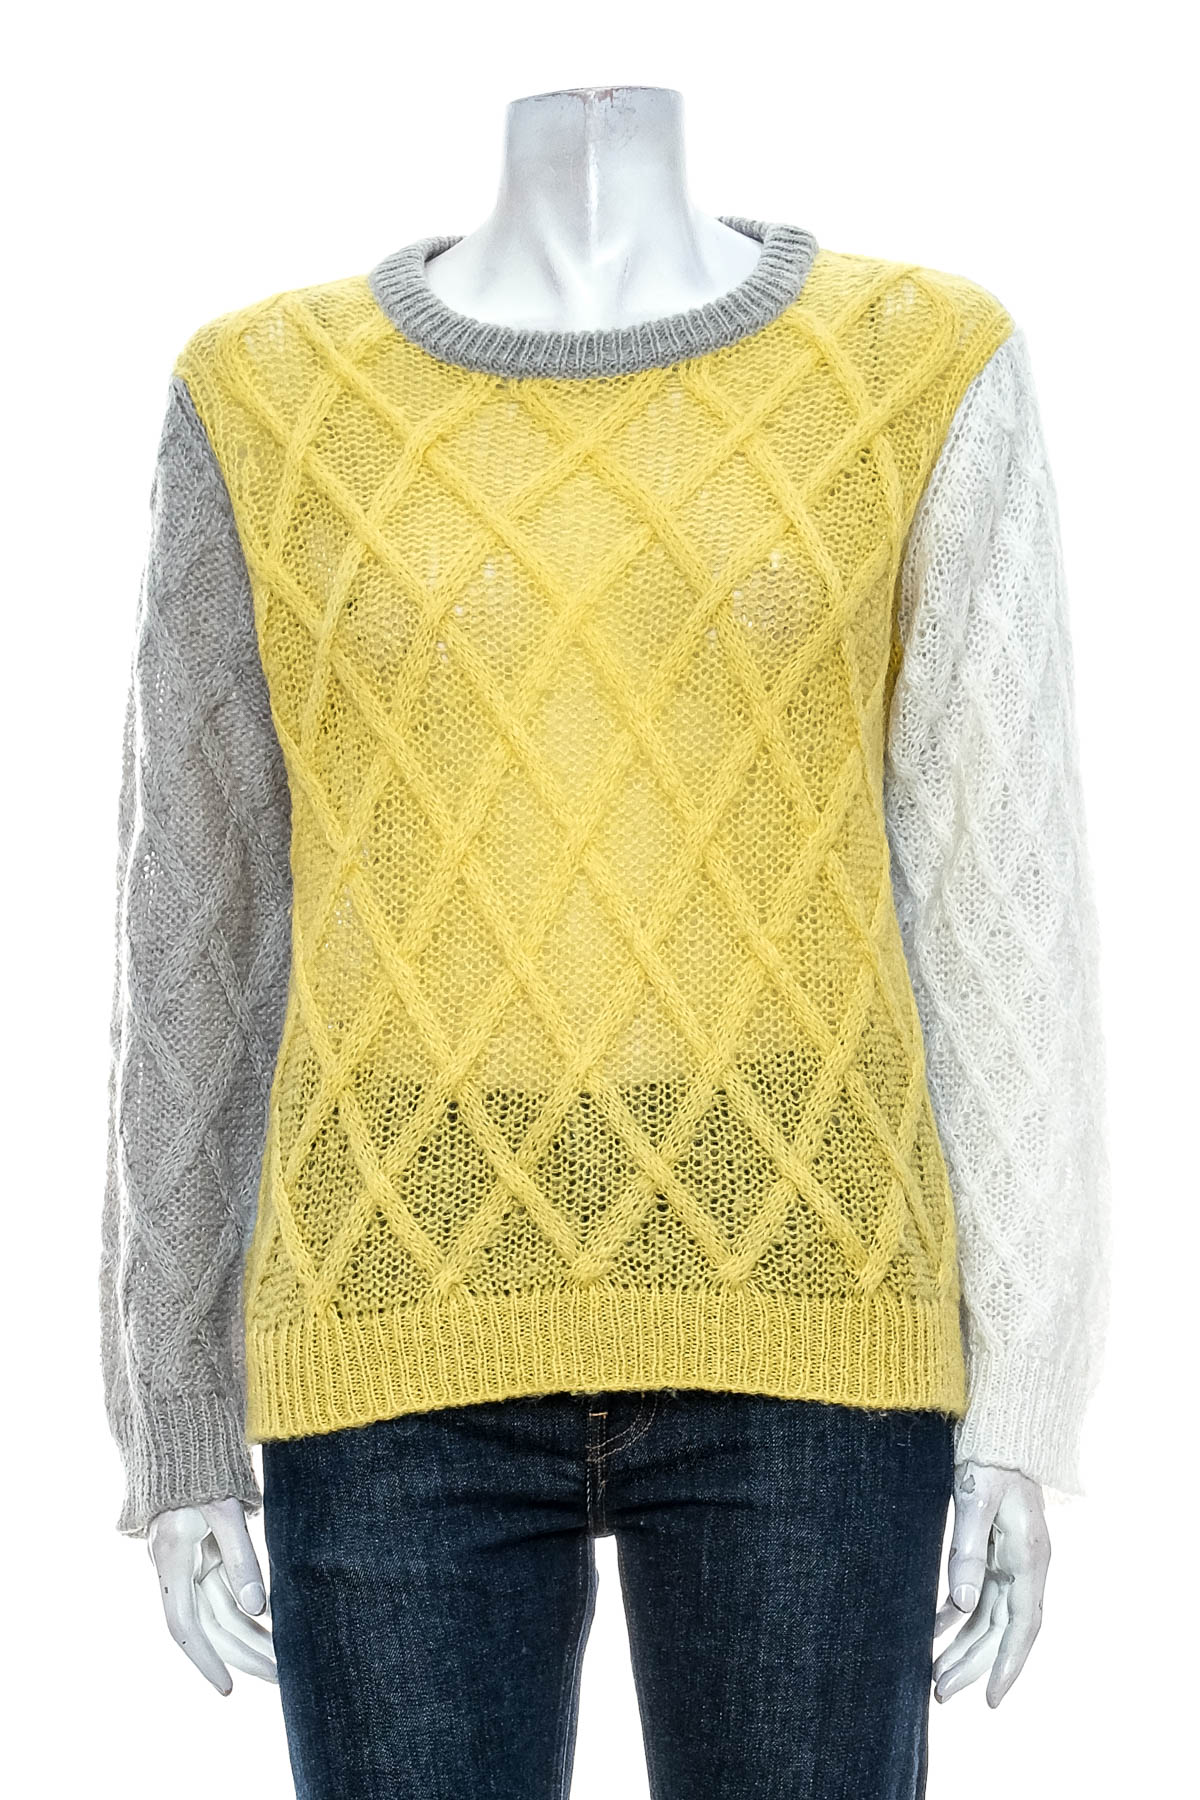 Women's sweater - Xandres - 0